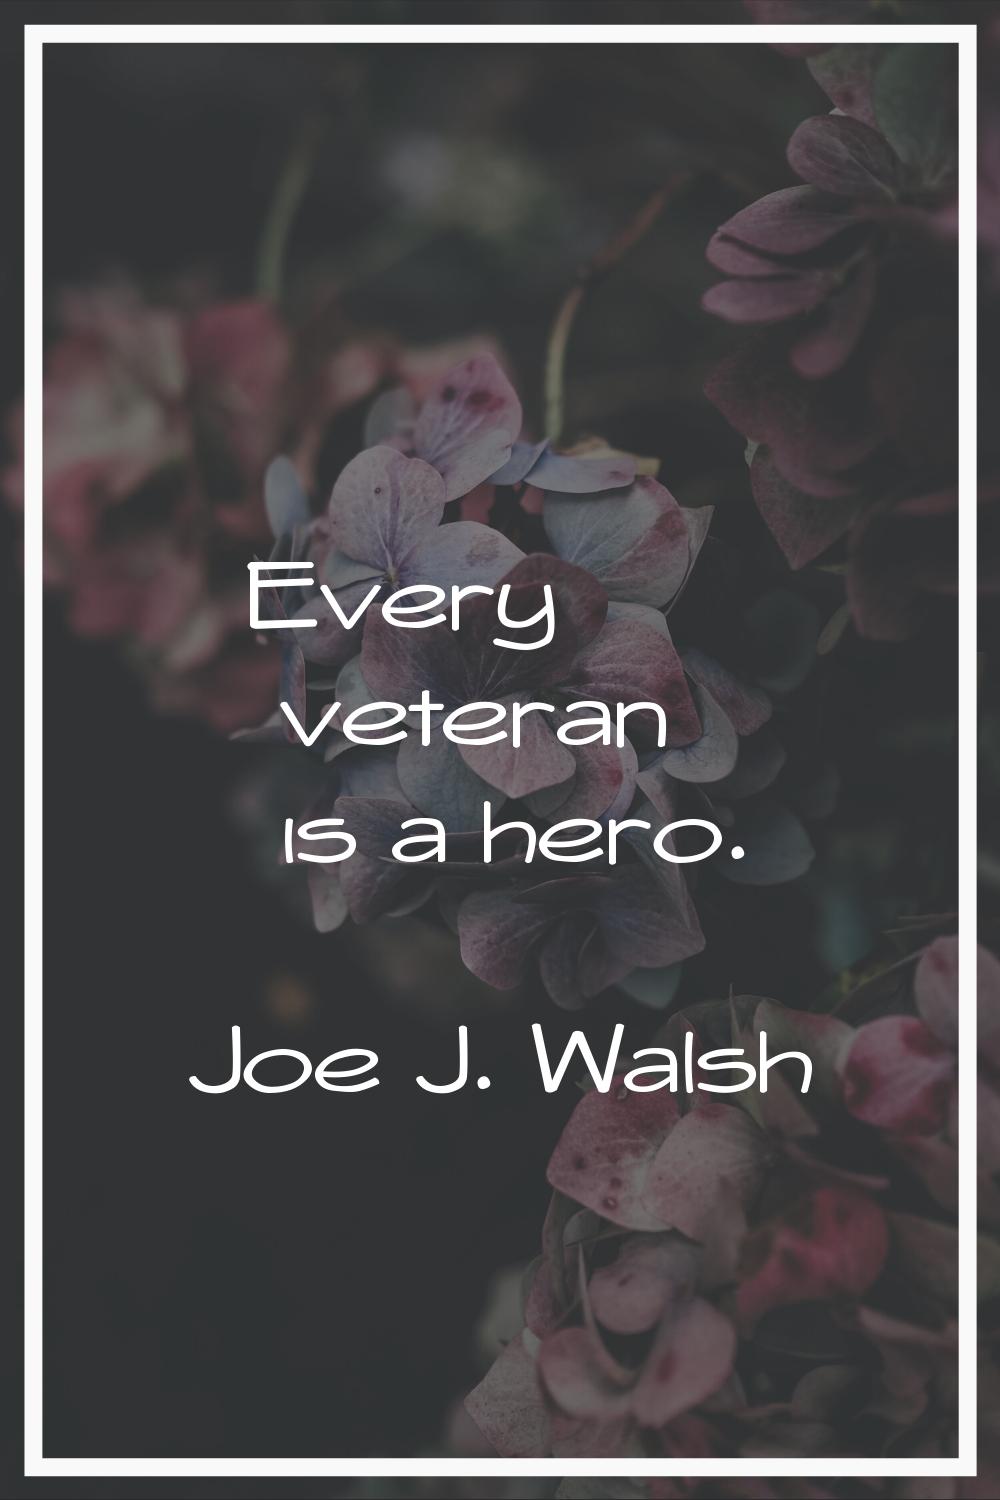 Every veteran is a hero.